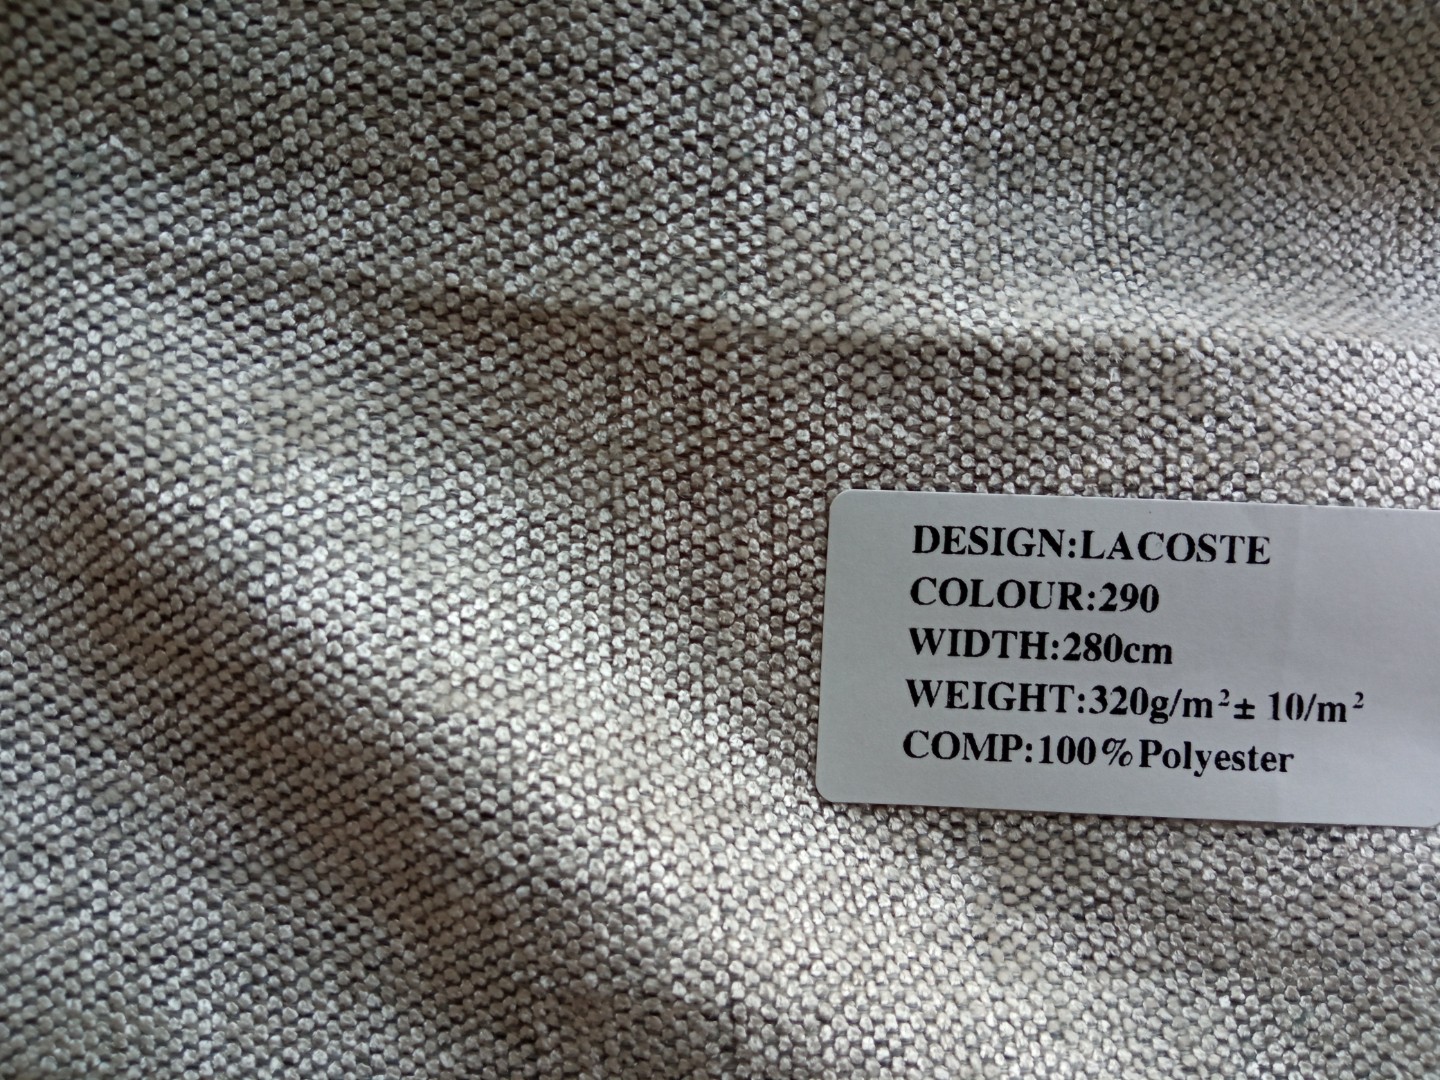 Ткань лакоста: что это за материал, описание и применение трикотажа